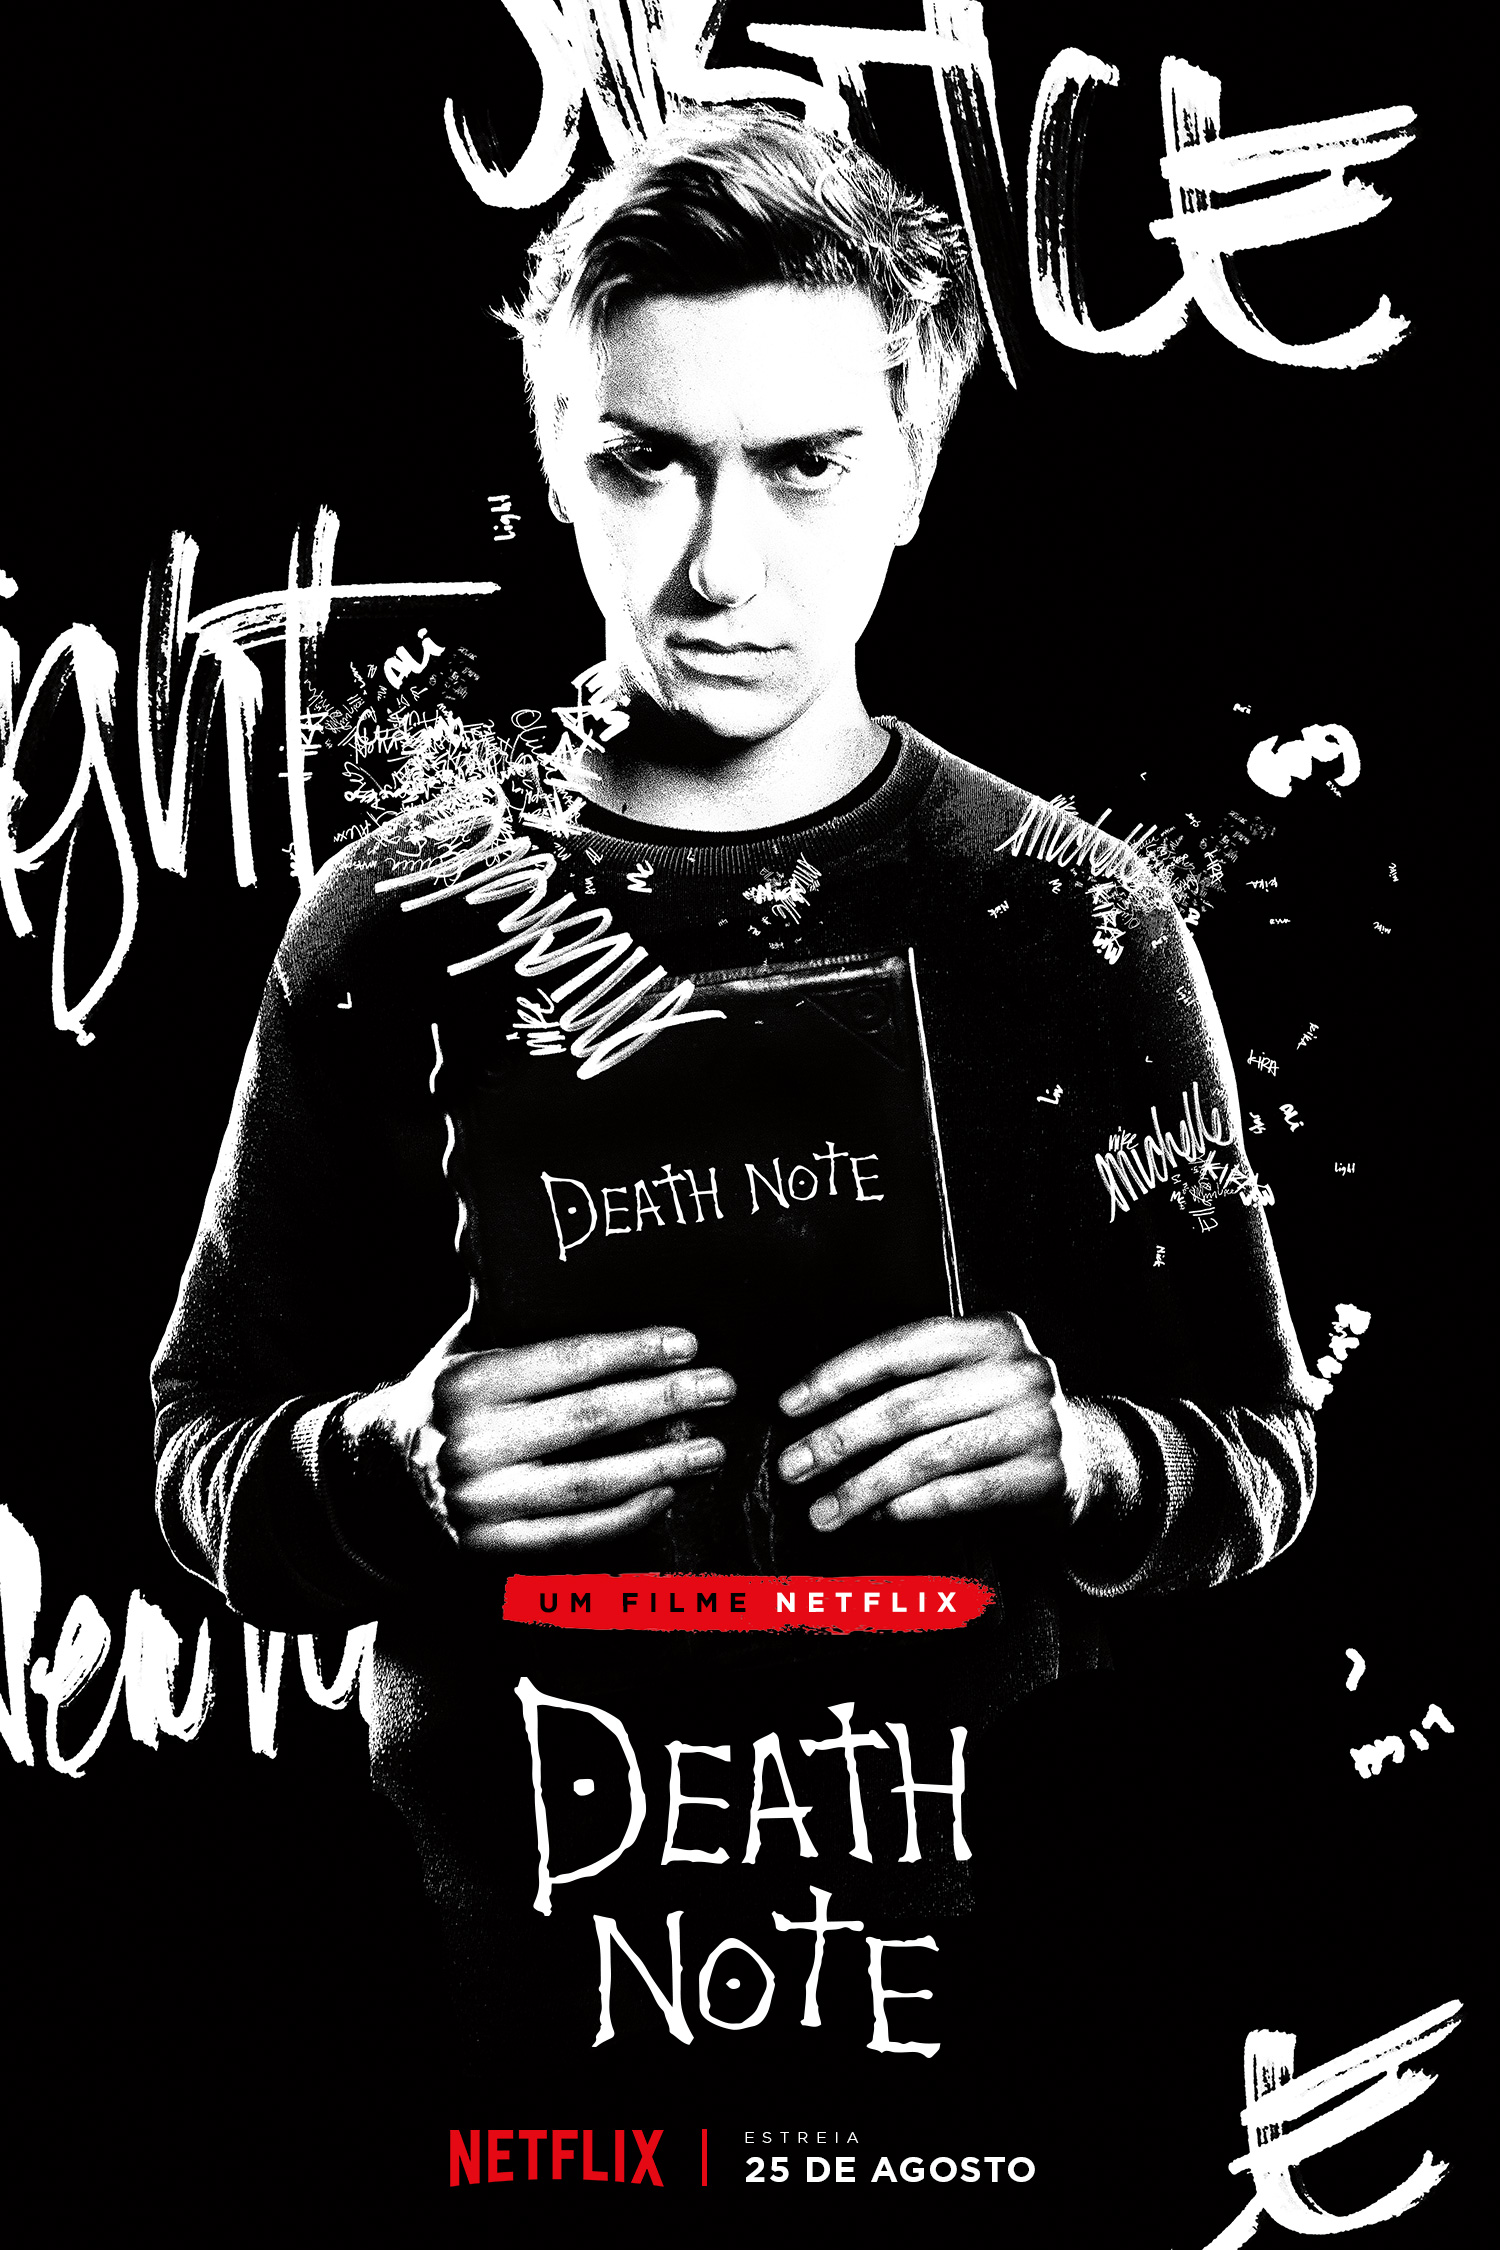 O novo e controverso filme do Death Note